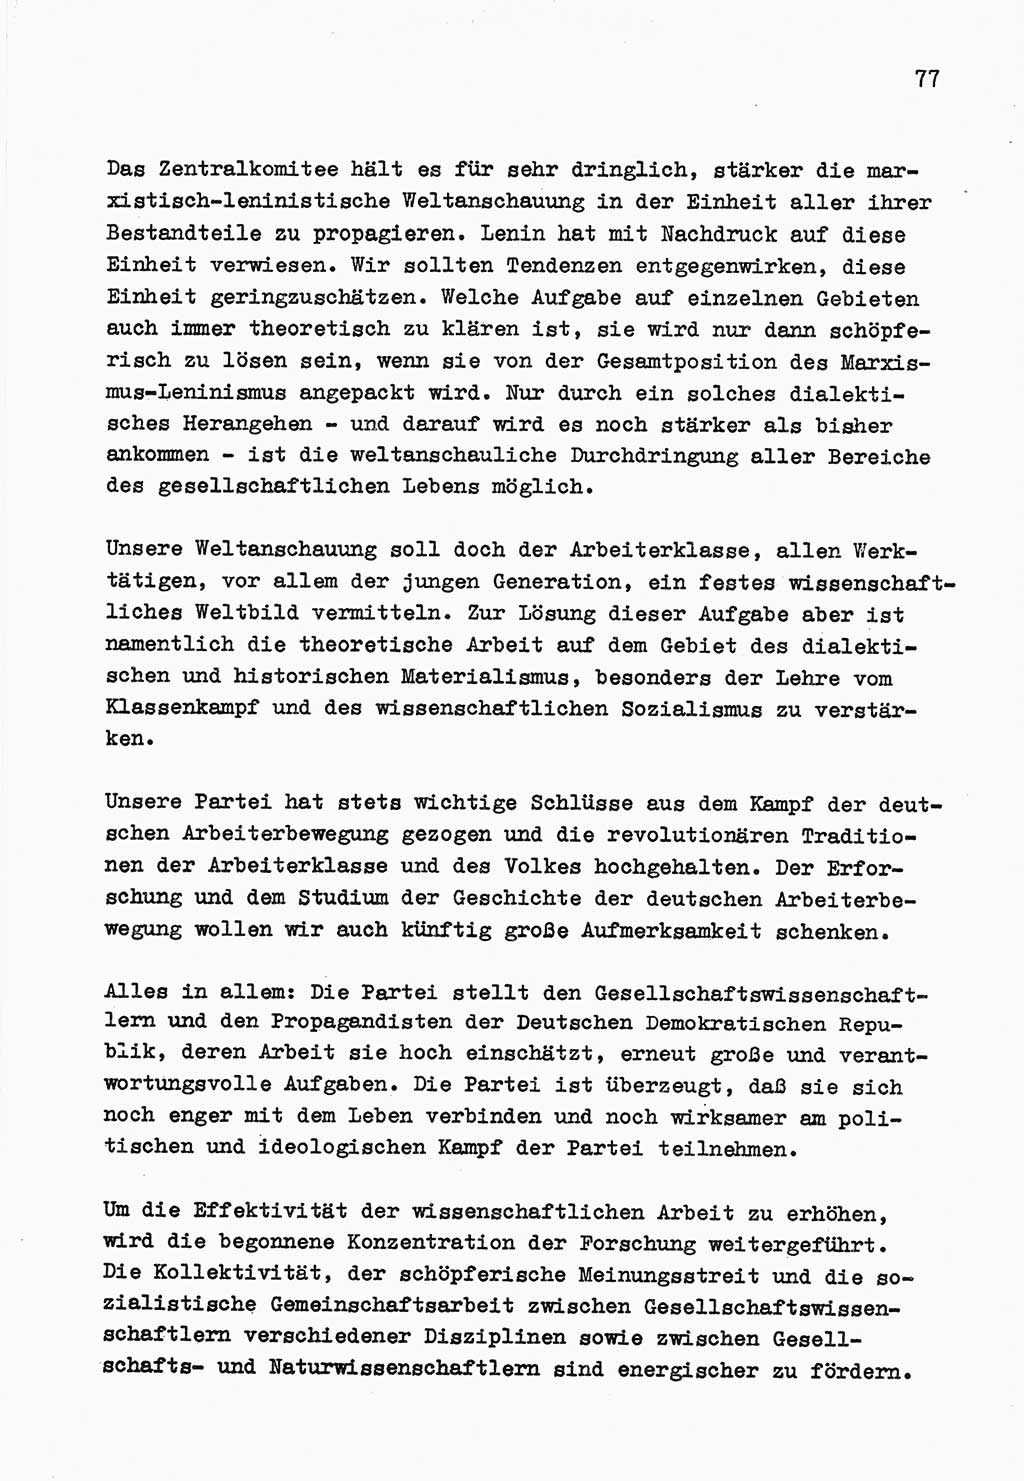 Zu Fragen der Parteiarbeit [Sozialistische Einheitspartei Deutschlands (SED) Deutsche Demokratische Republik (DDR)] 1979, Seite 77 (Fr. PA SED DDR 1979, S. 77)